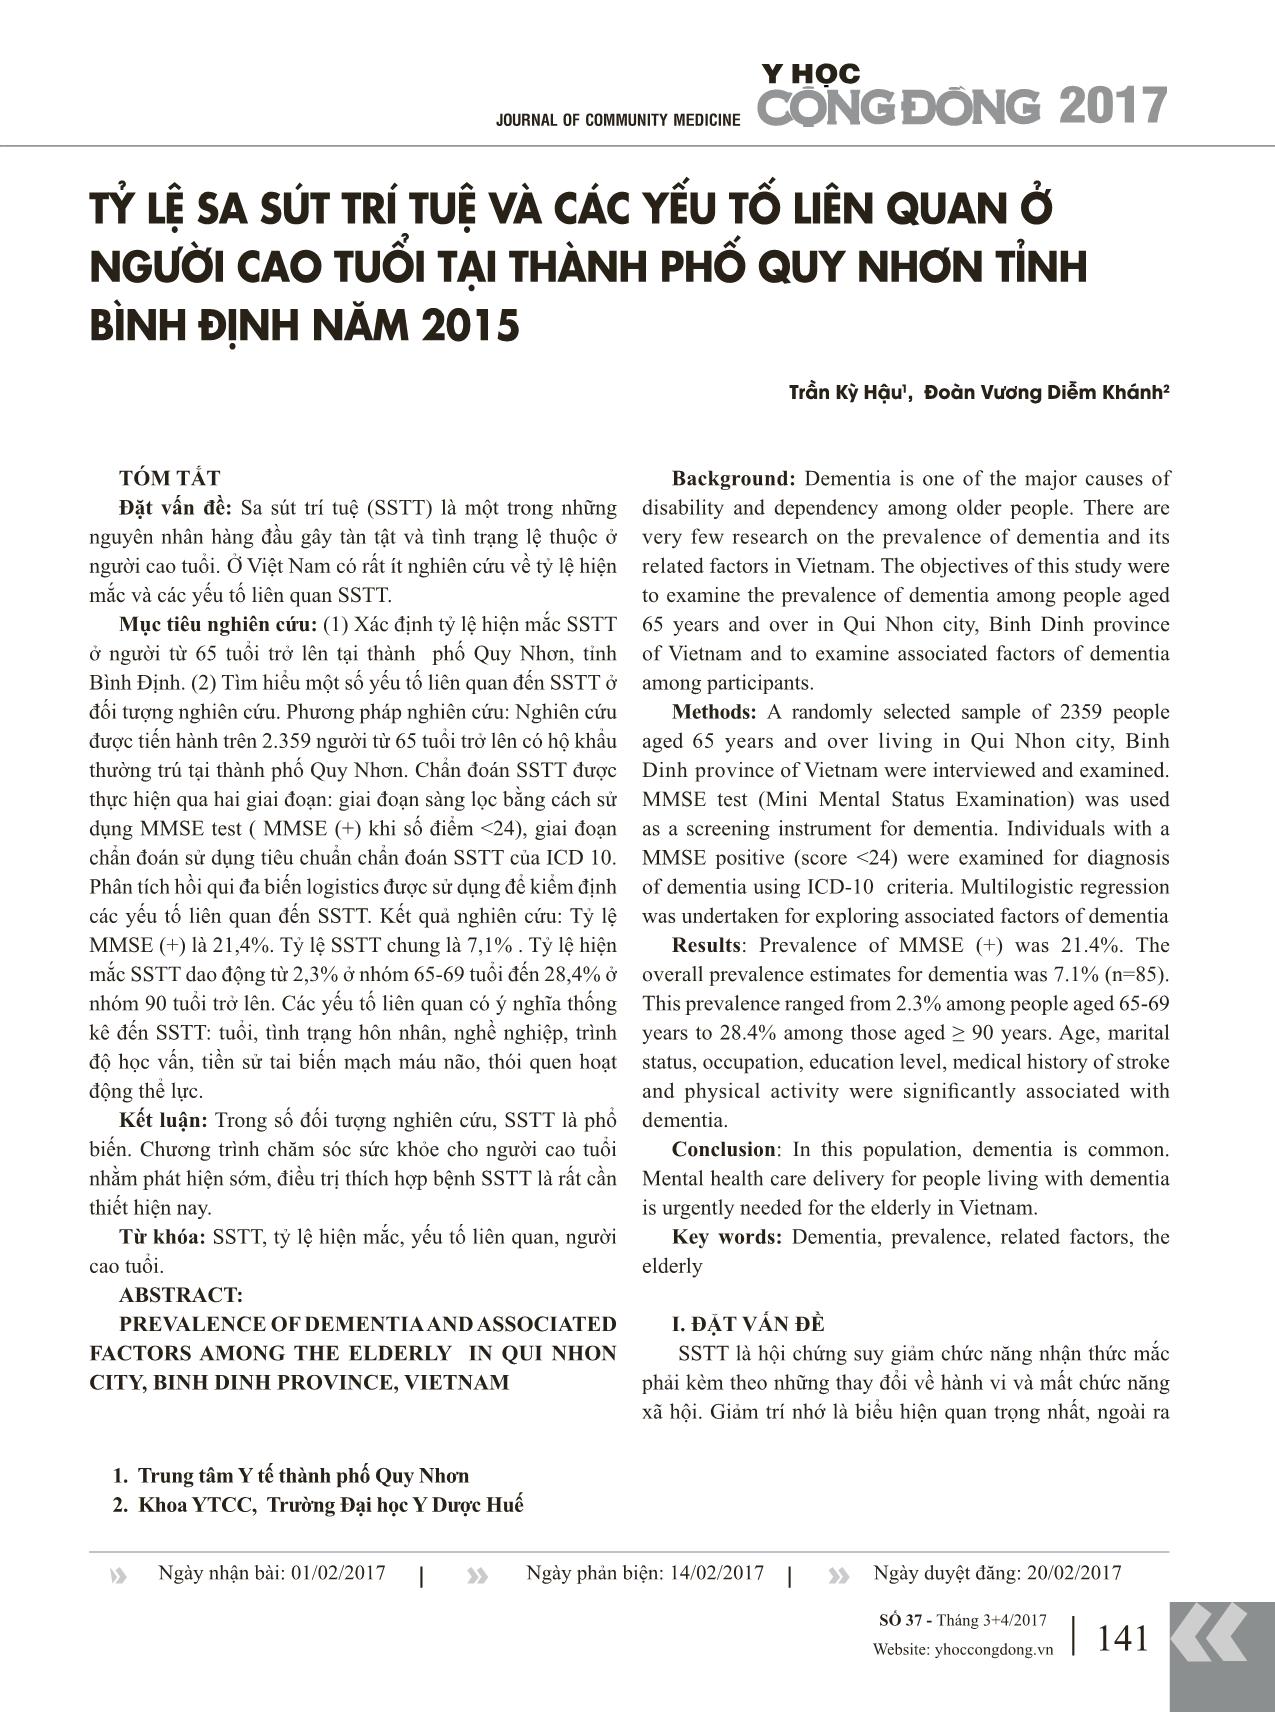 Tỷ lệ sa sút trí tuệ và các yếu tố liên quan ở người cao tuổi tại thành phố Quy Nhơn tỉnh Bình Định năm 2015 trang 1